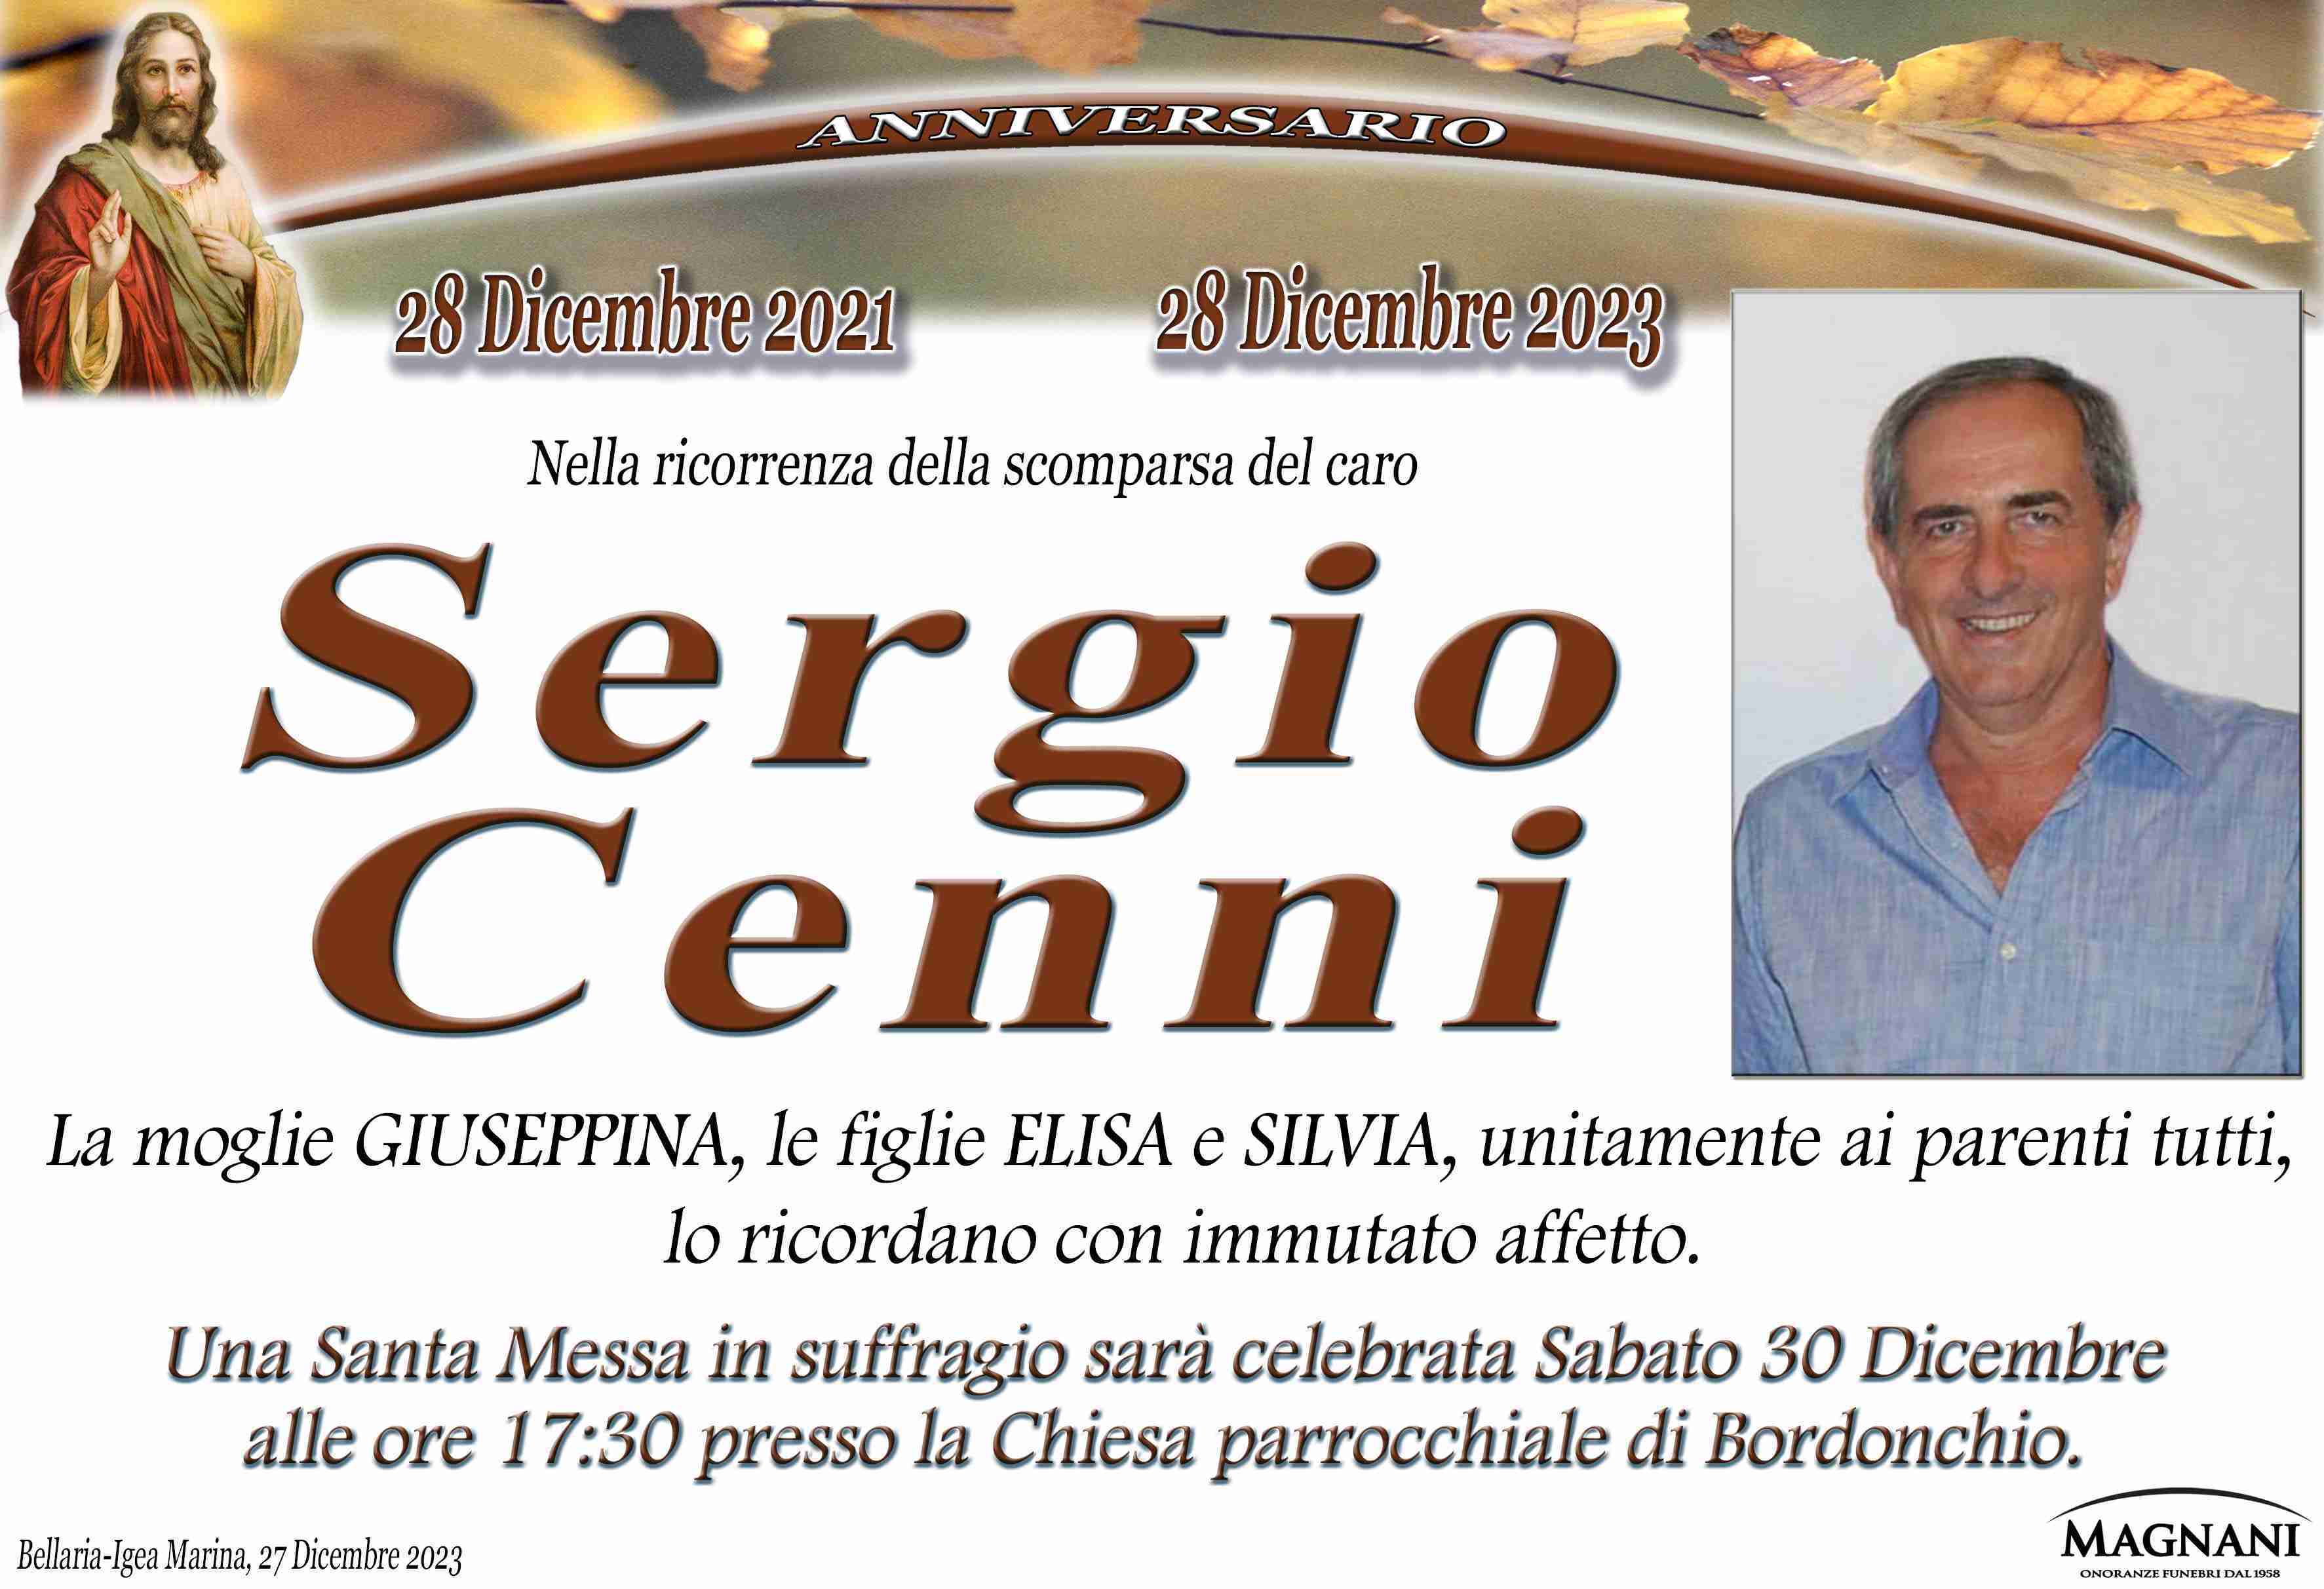 Sergio Cenni